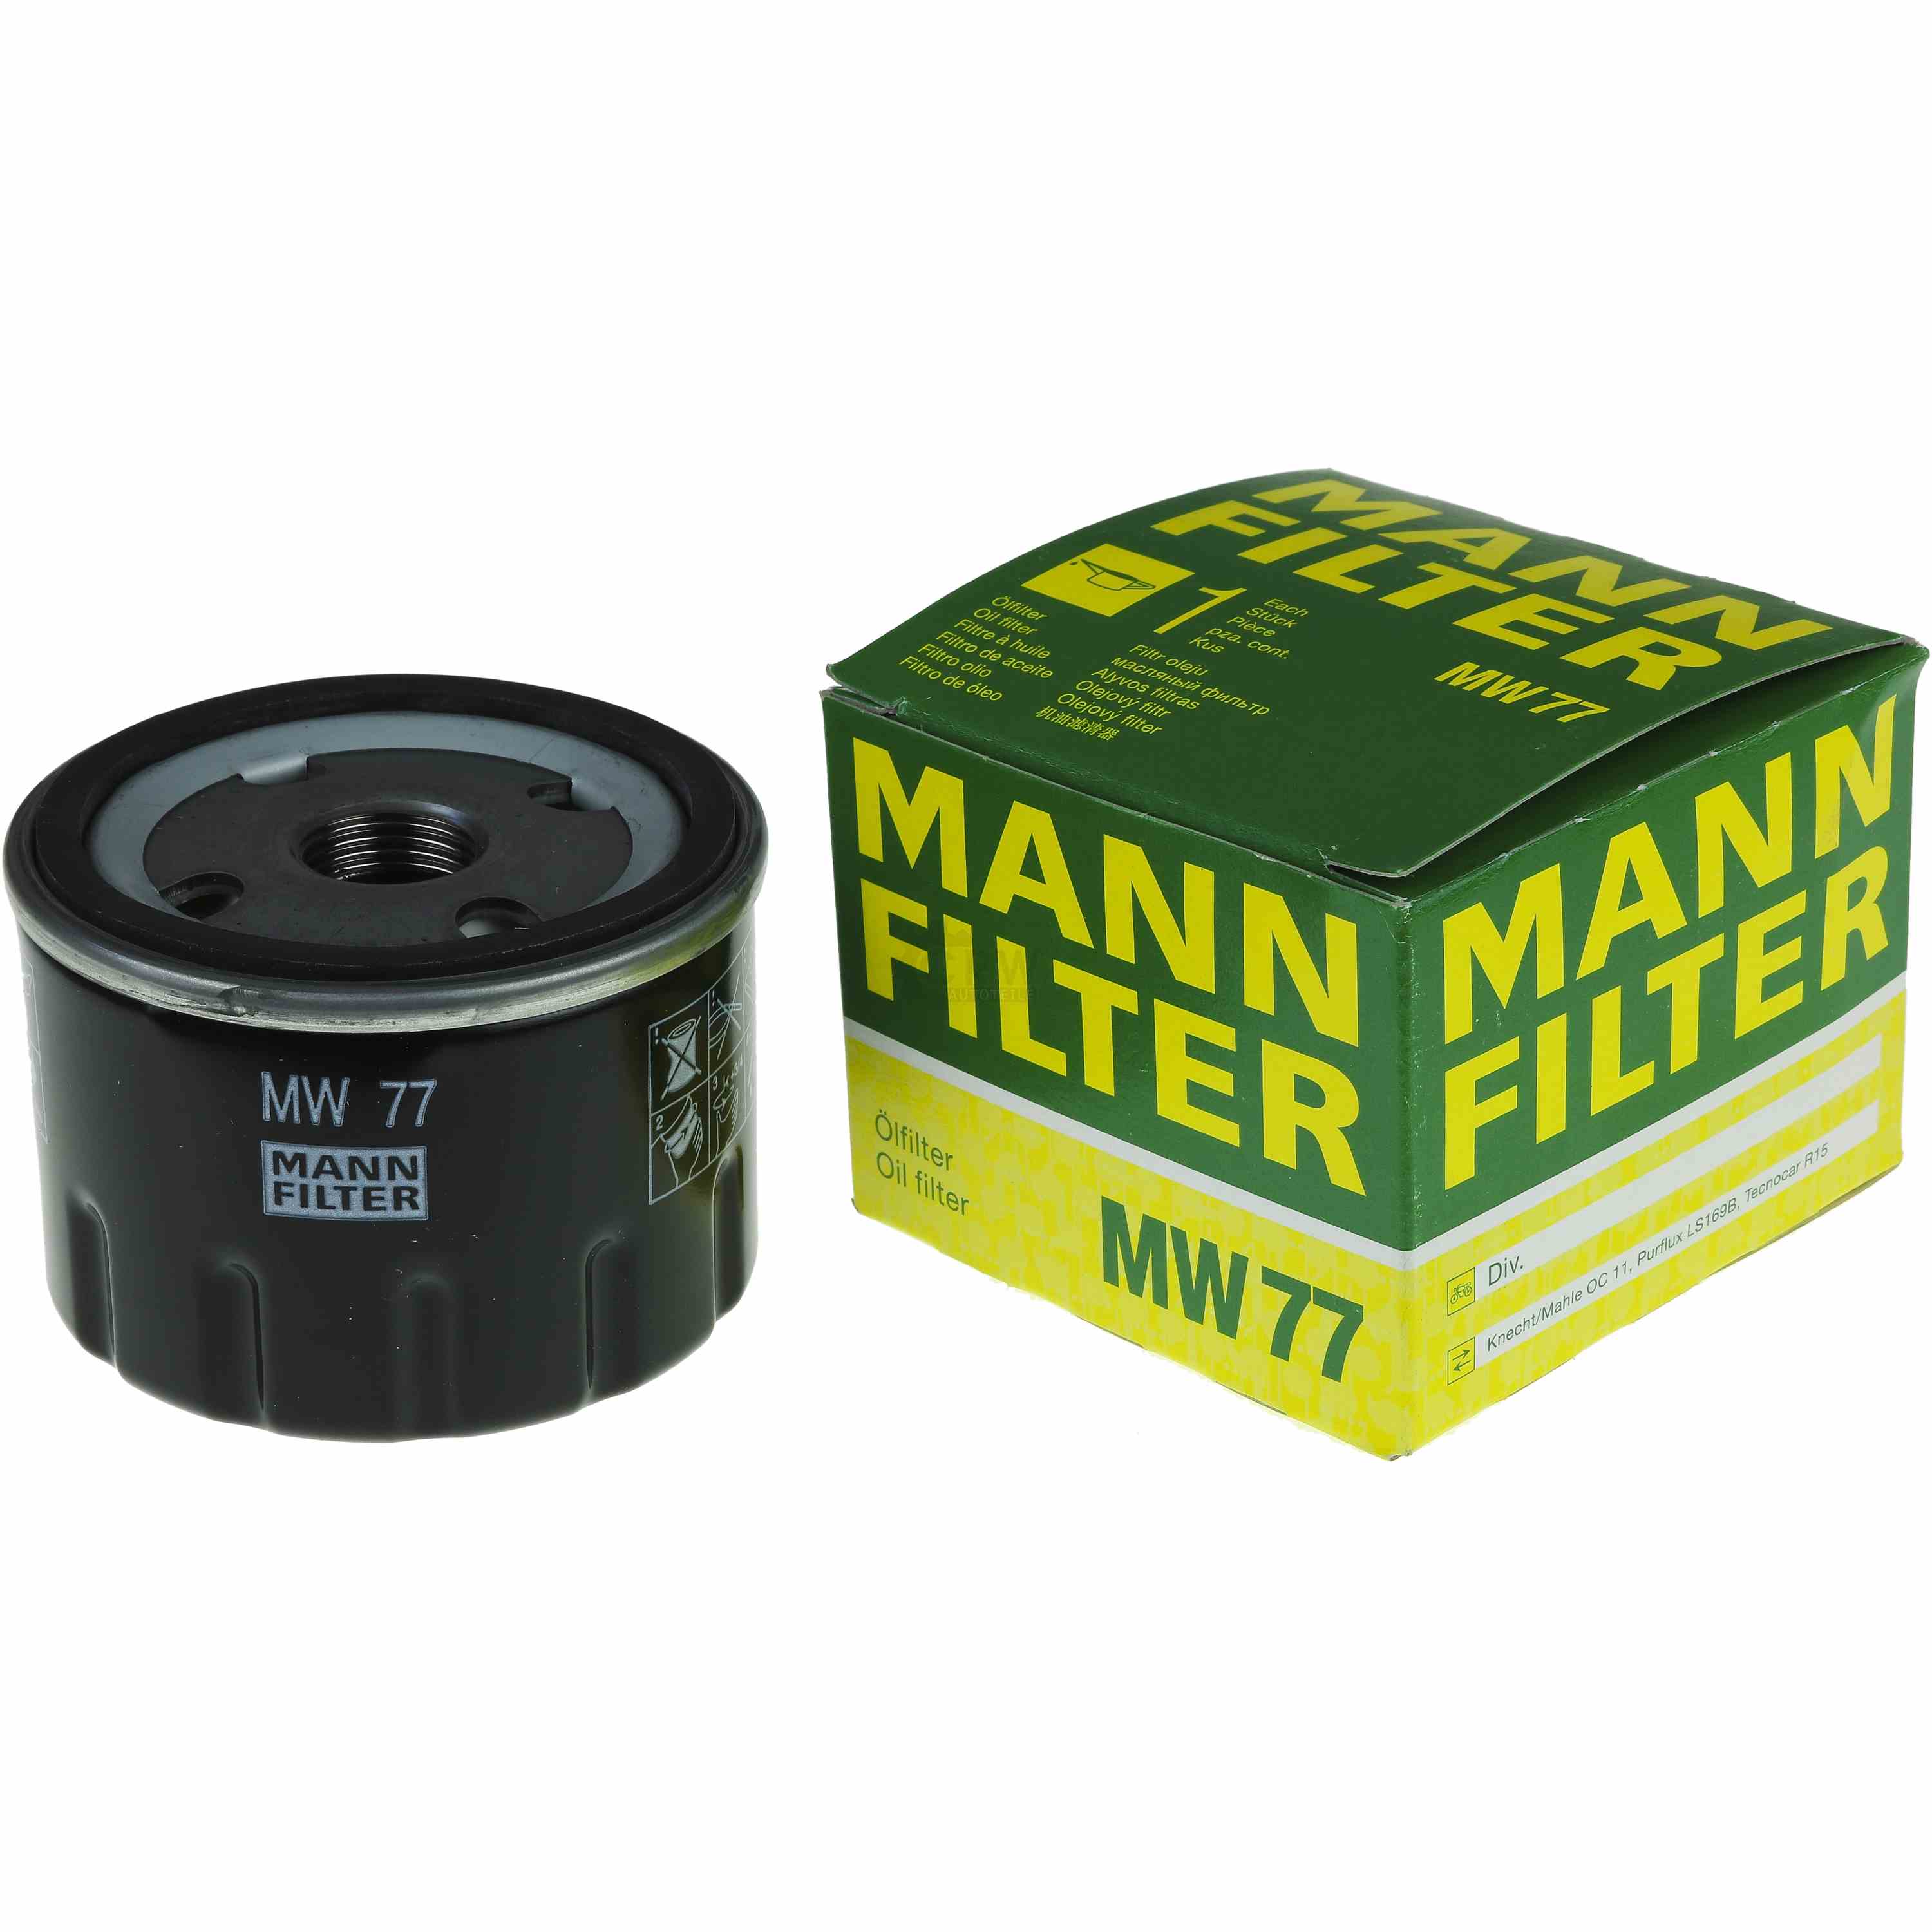 MANN-FILTER Ölfilter MW 77 Oil Filter